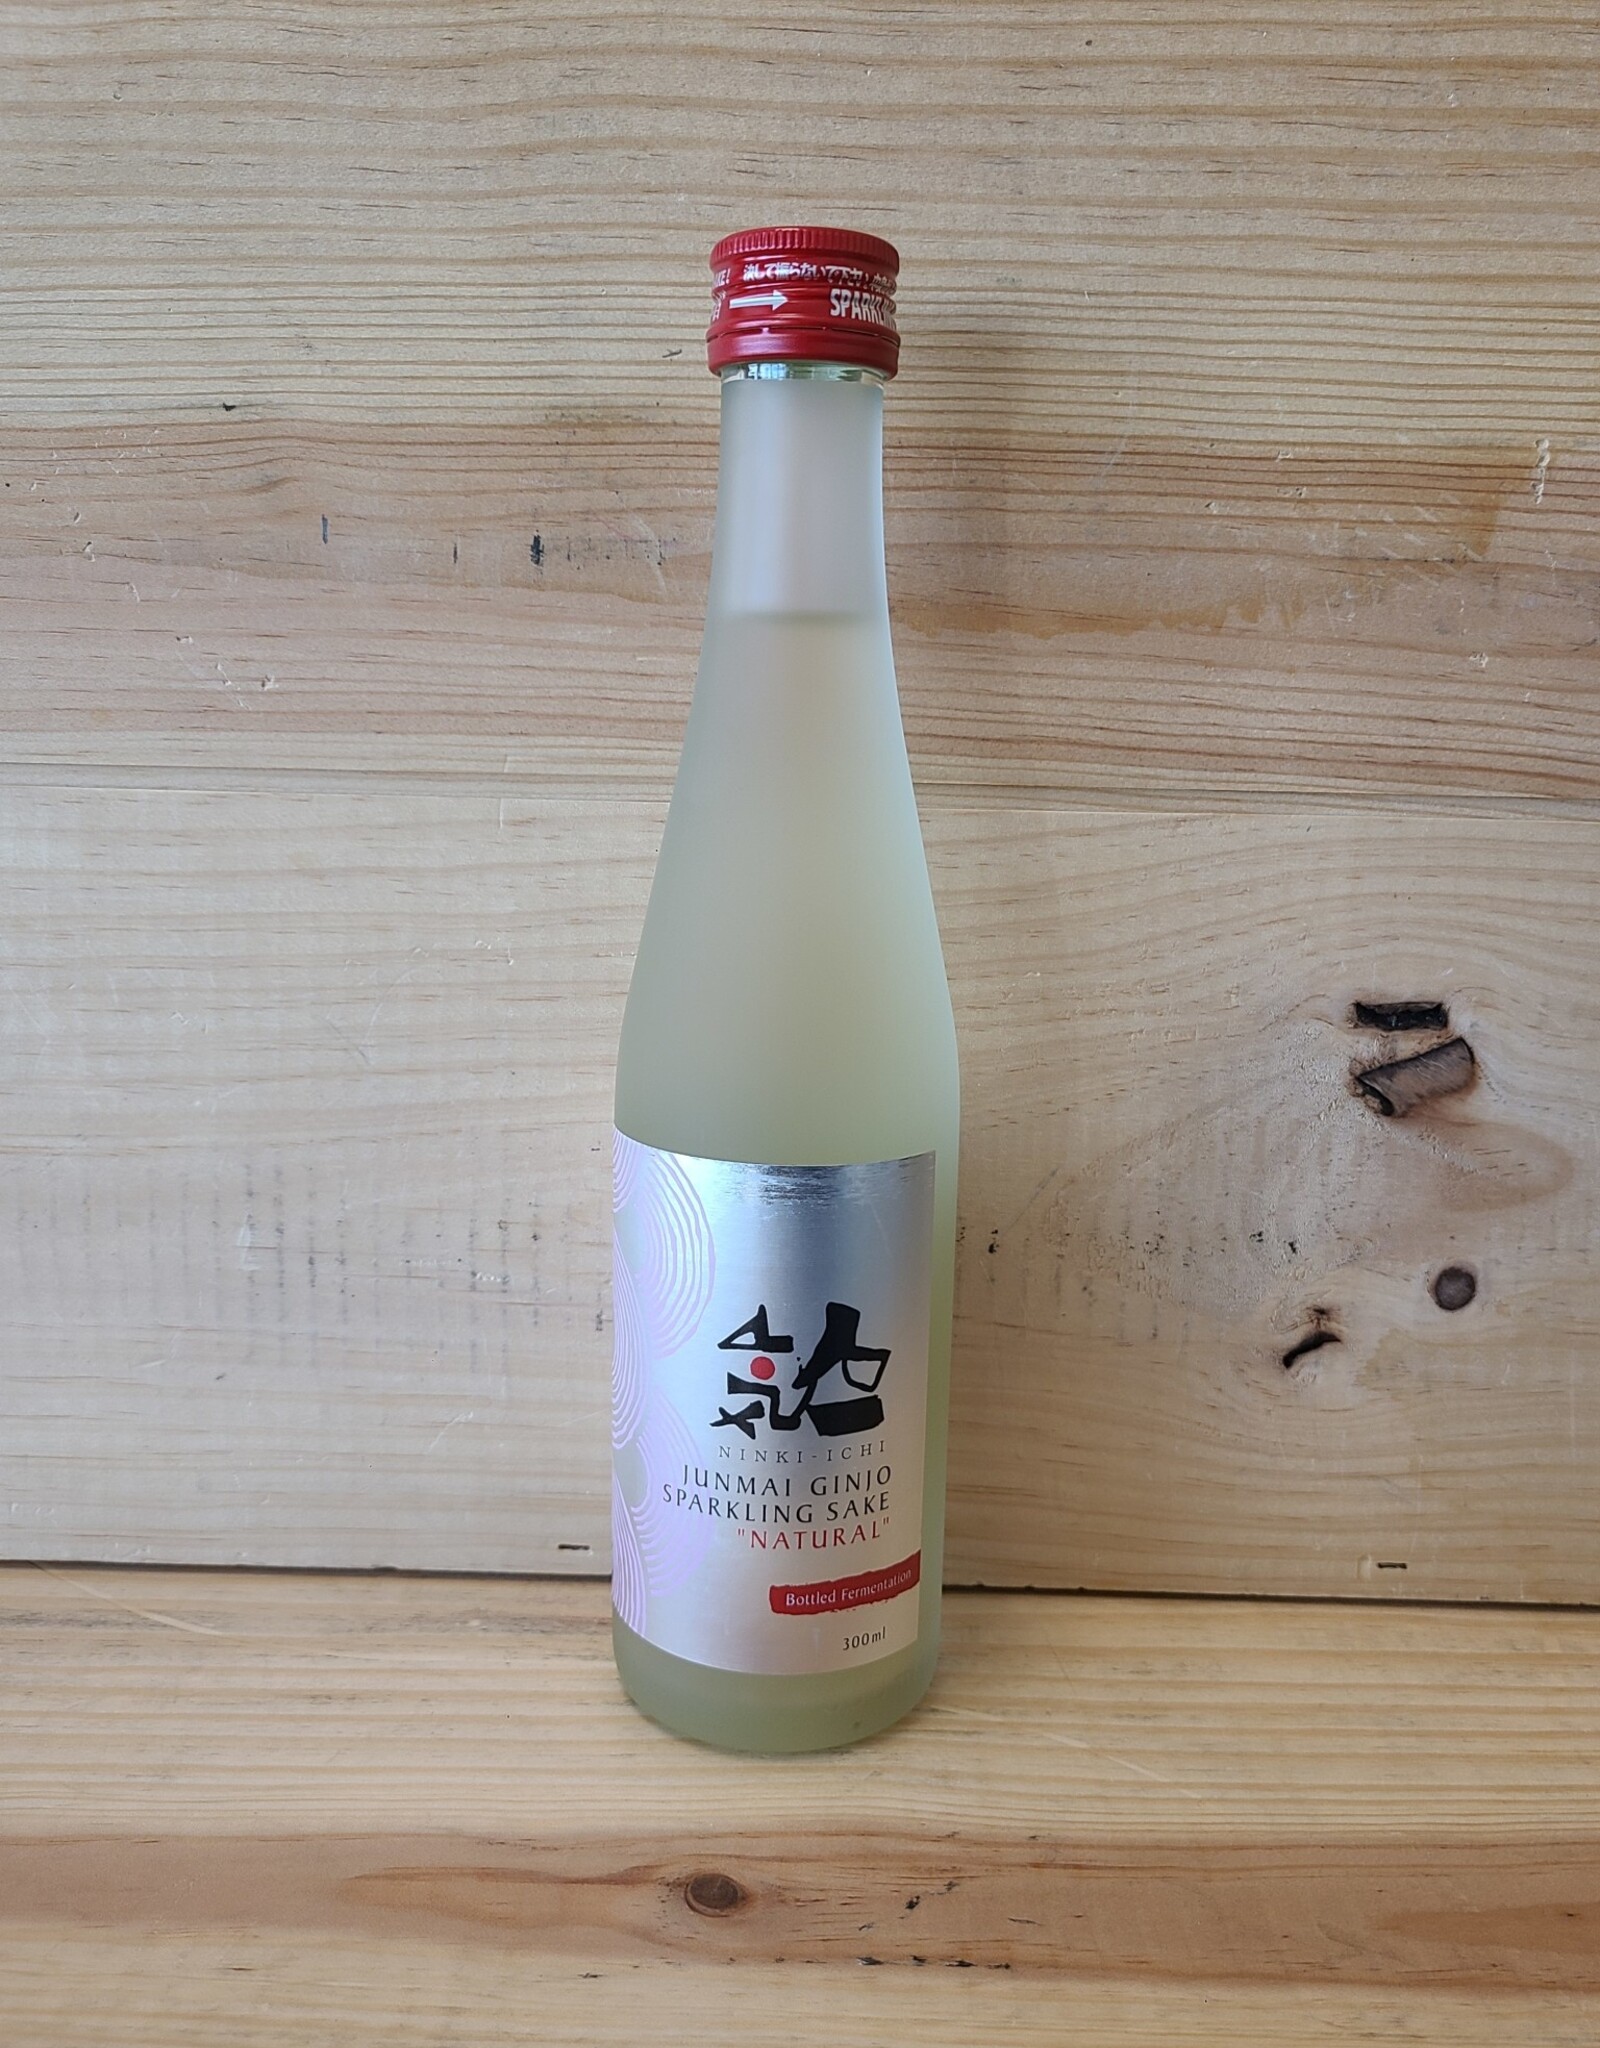 Ninki-ichi Sparkling Sake